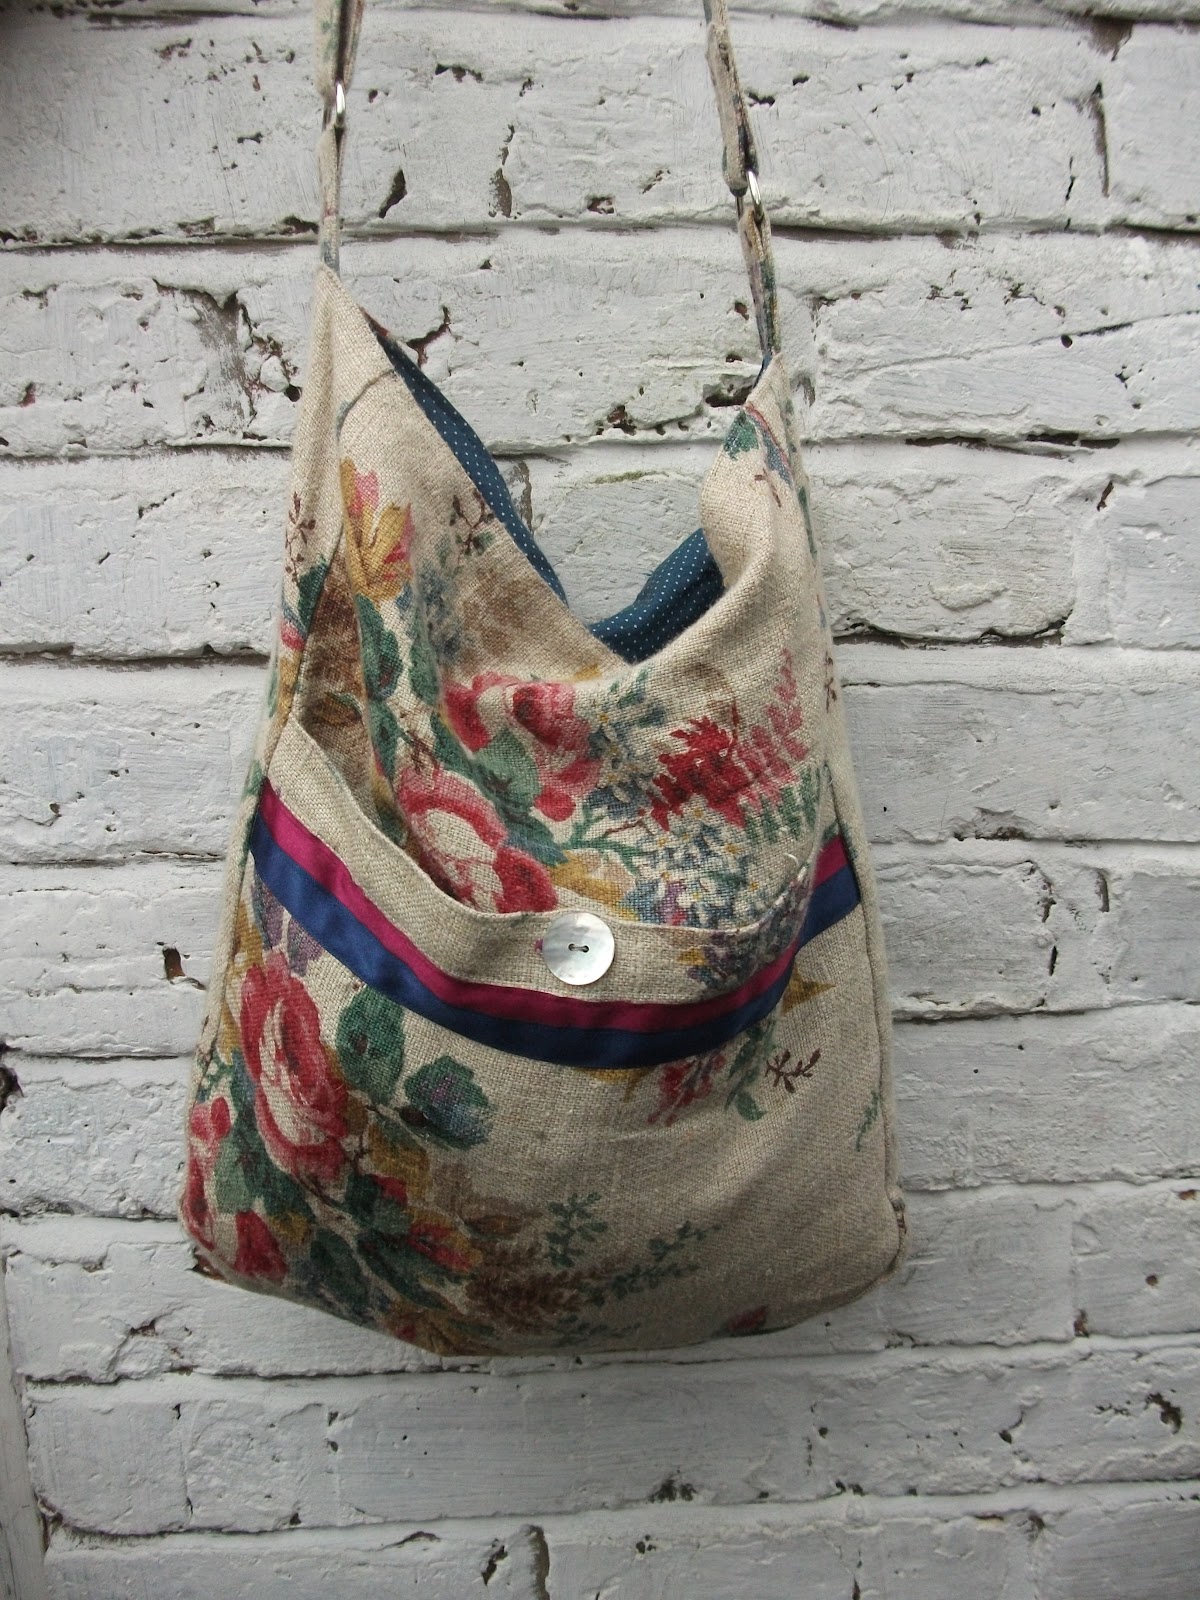 Oxfam Shop Whitworth Park: Vintage Fabric Bag